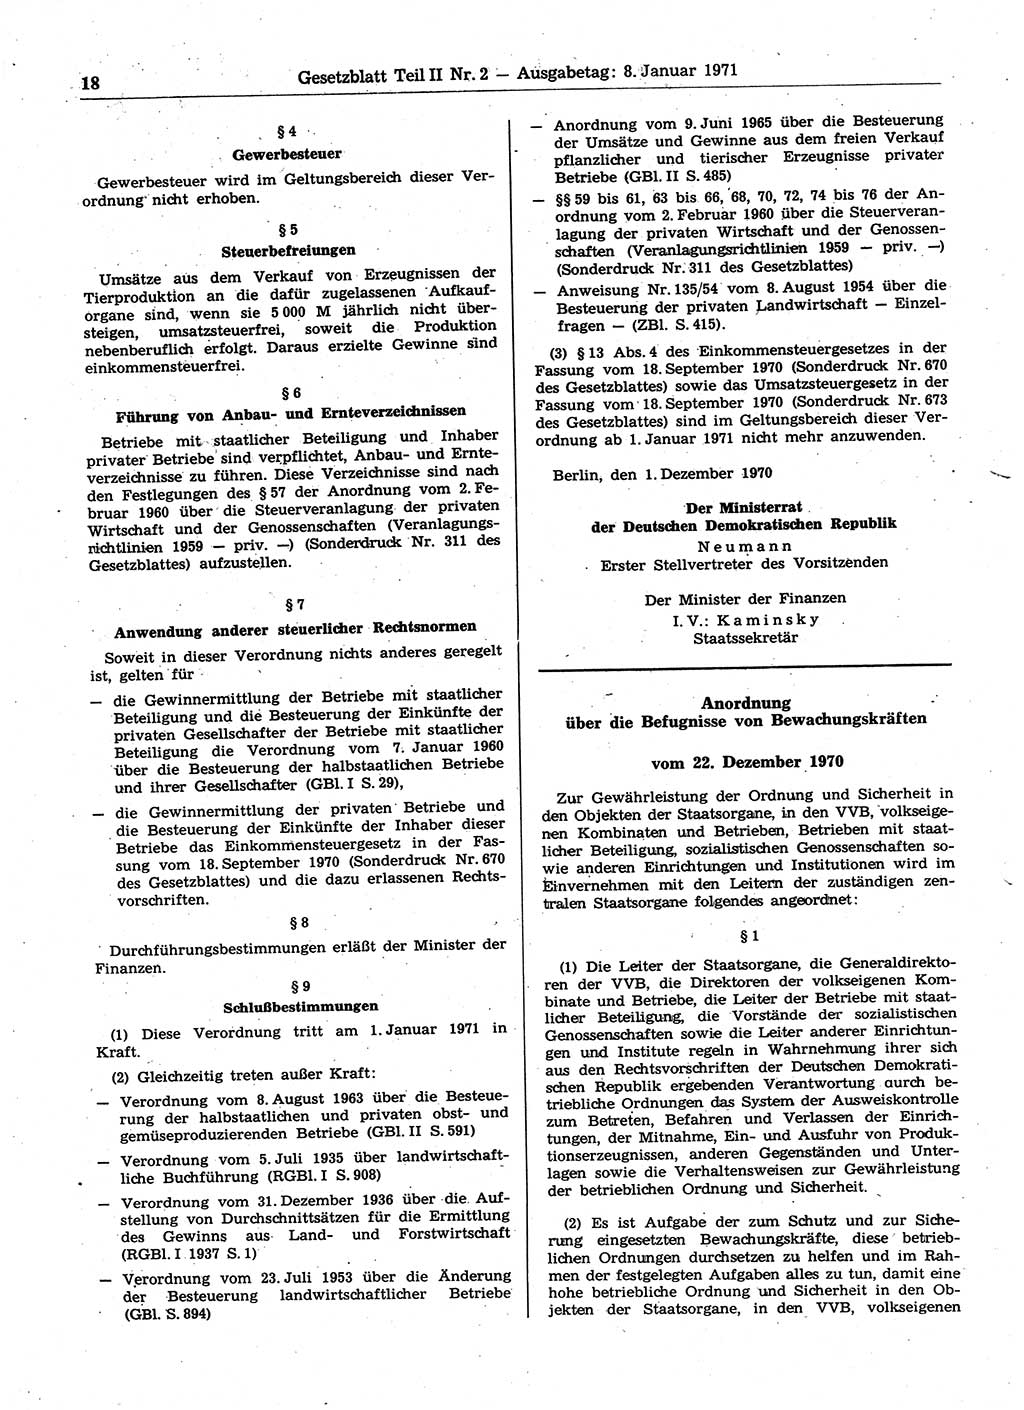 Gesetzblatt (GBl.) der Deutschen Demokratischen Republik (DDR) Teil ⅠⅠ 1971, Seite 18 (GBl. DDR ⅠⅠ 1971, S. 18)